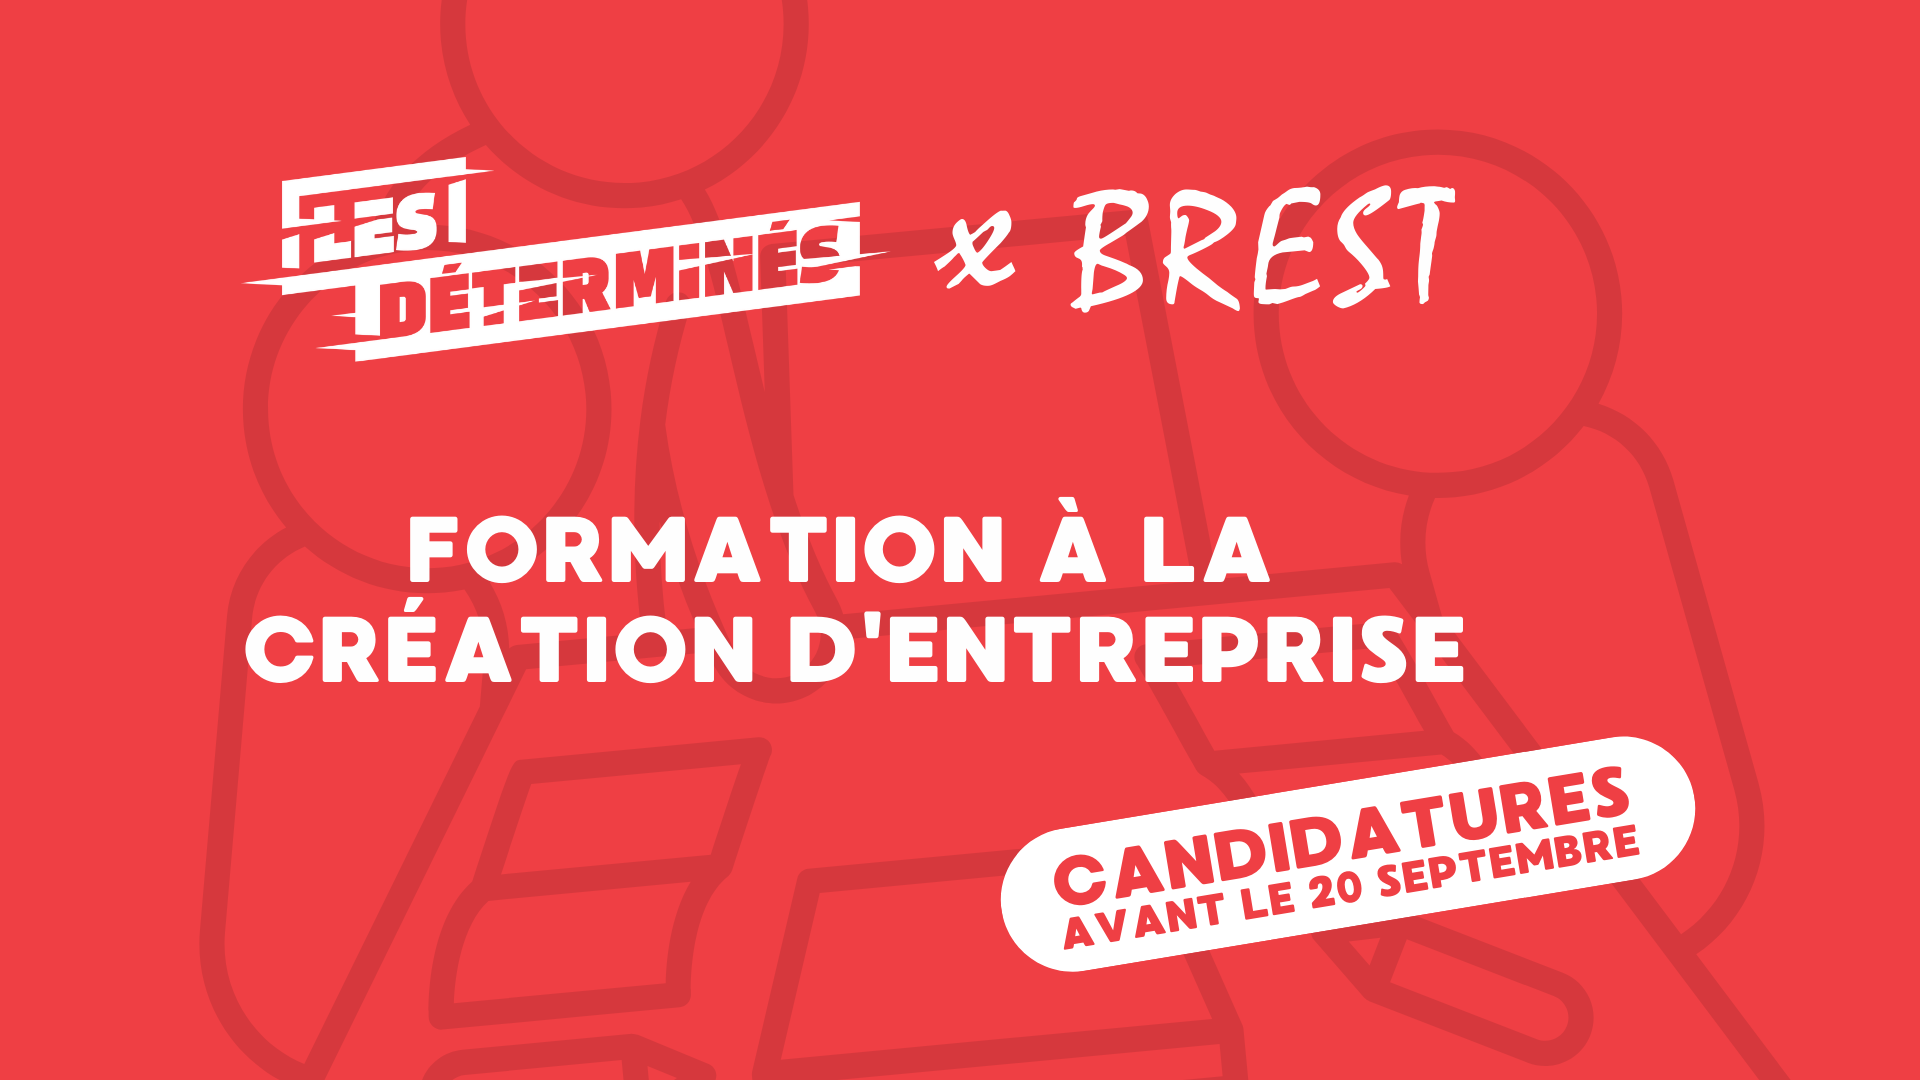 You are currently viewing Formation gratuite à la création d’entreprise : « Les déterminés » à Brest